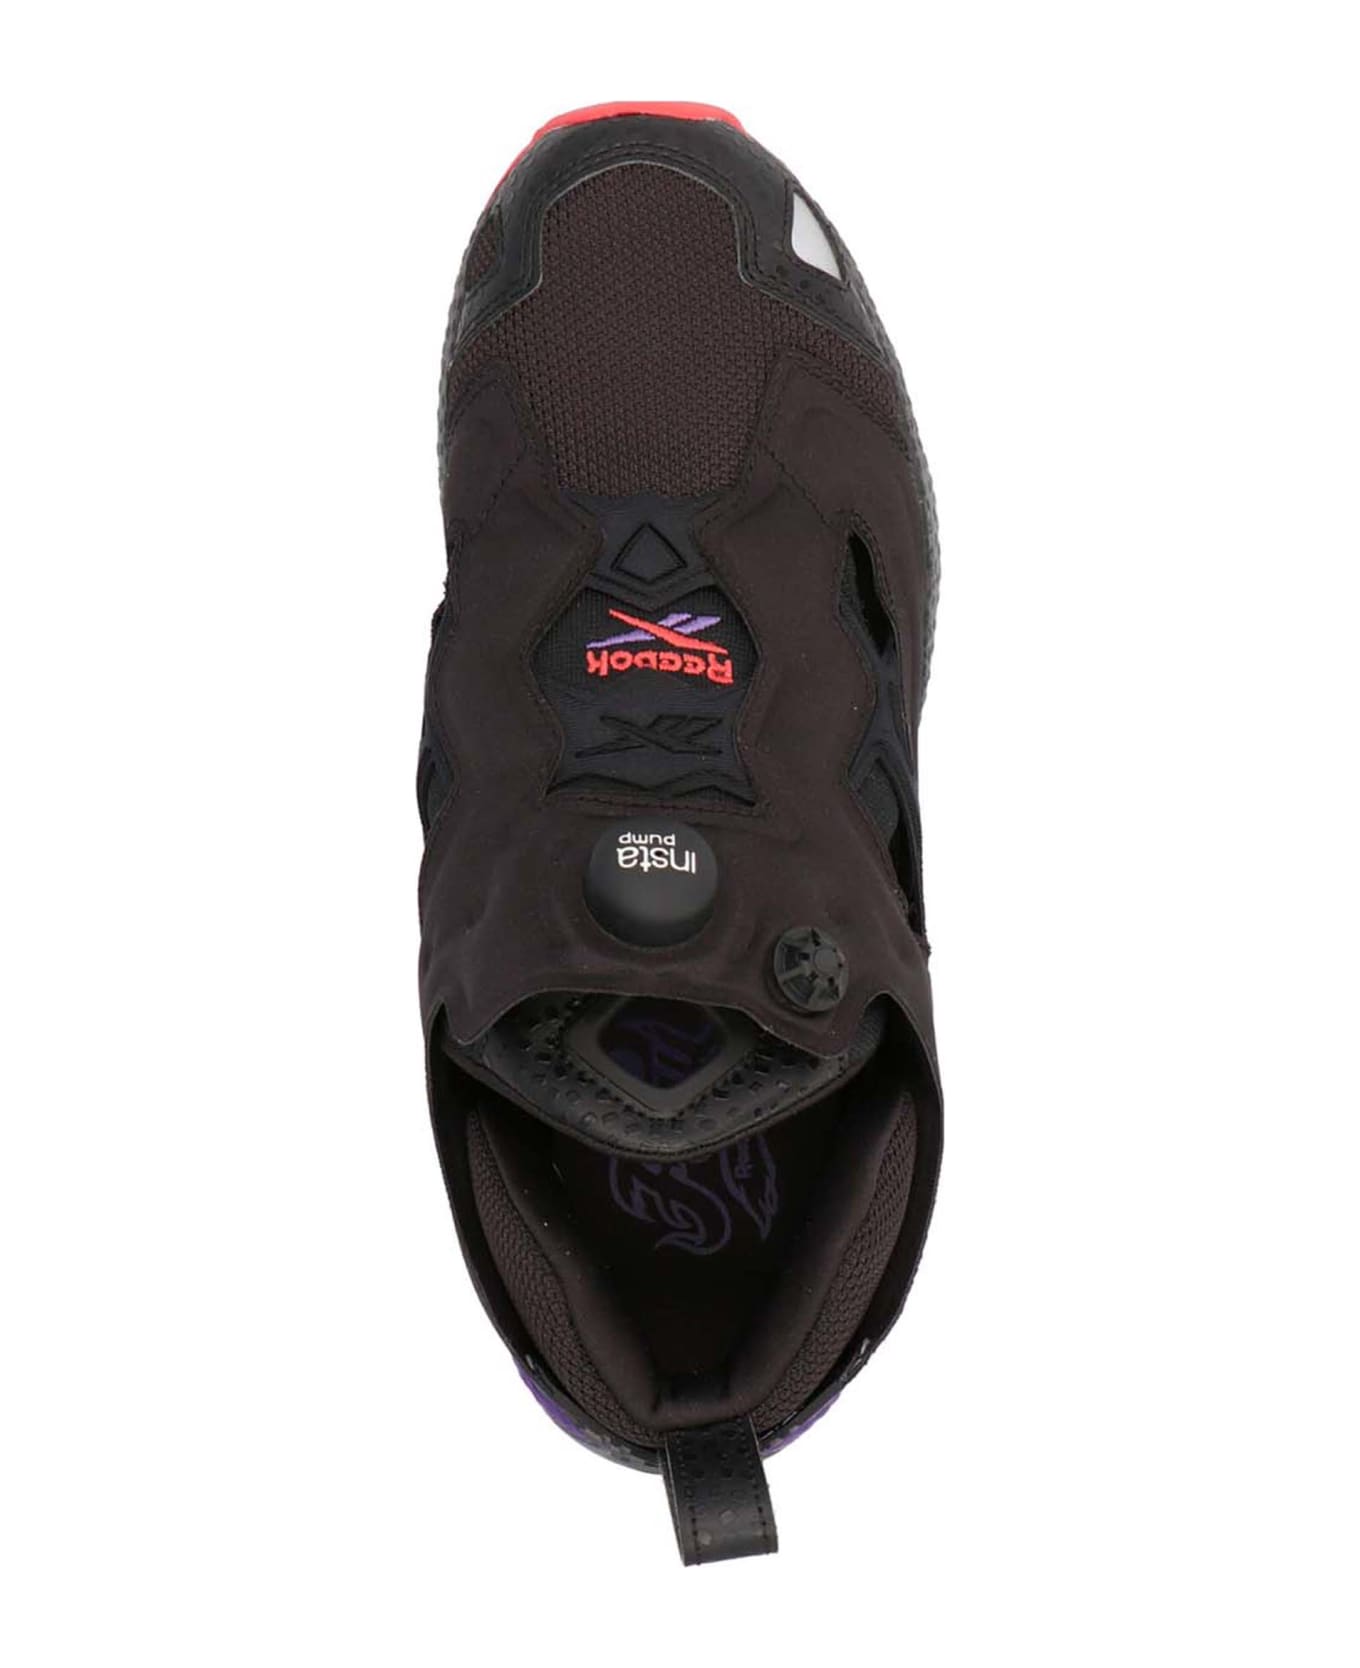 Reebok 'instapump Fury 95' Sneakers - Black  